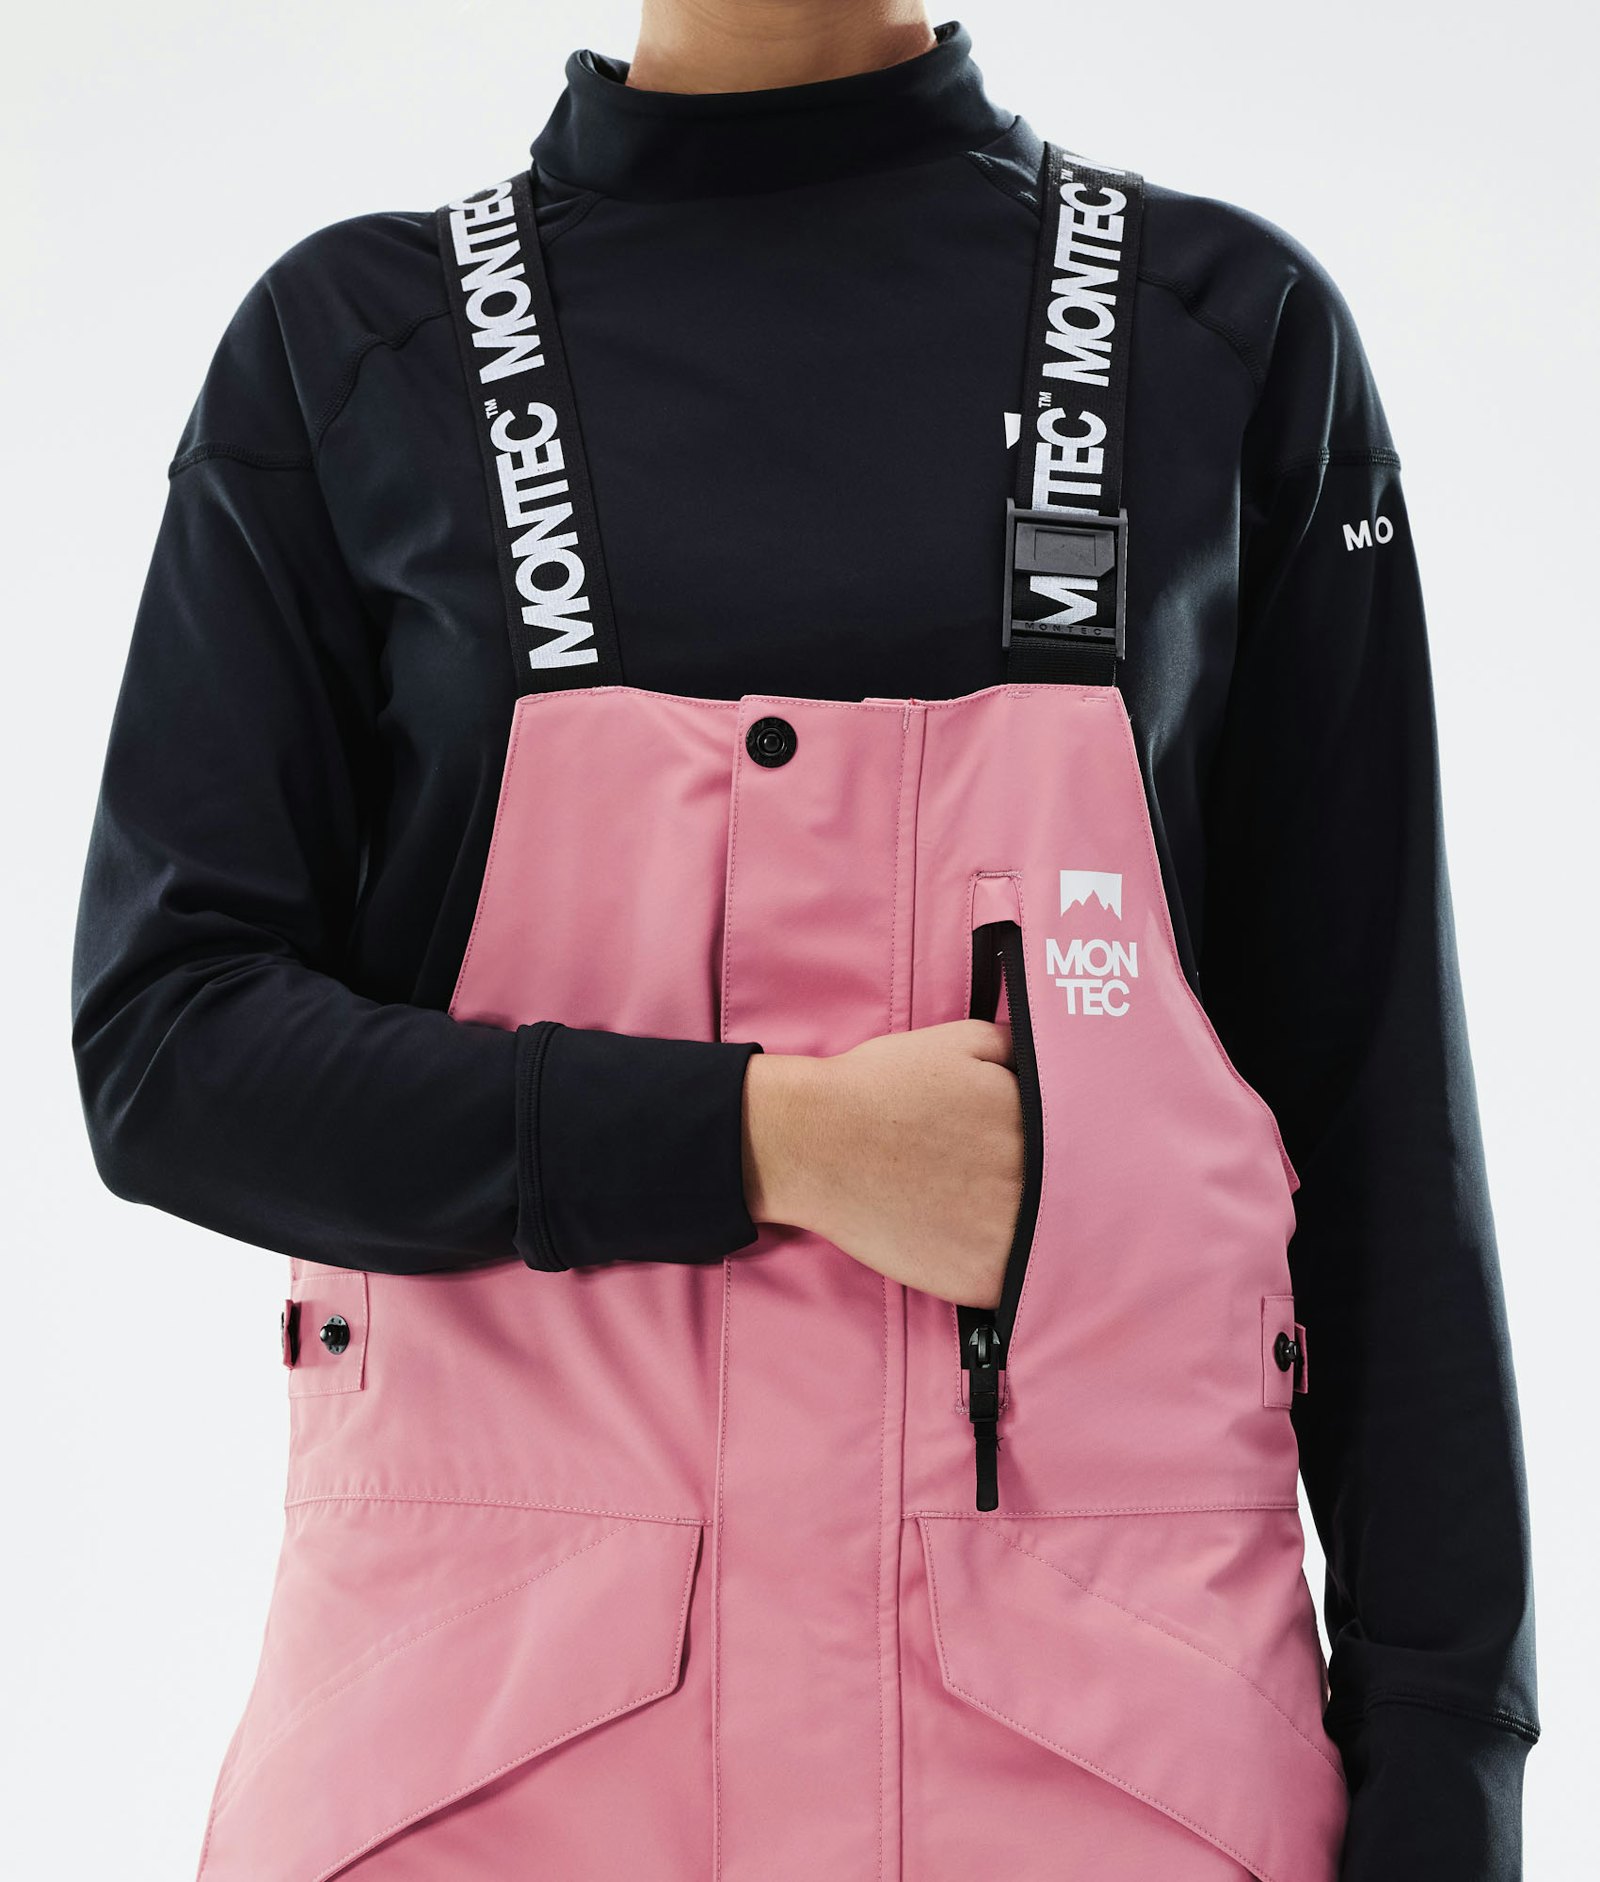 Fawk W 2021 Pantalon de Snowboard Femme Pink/Black Renewed